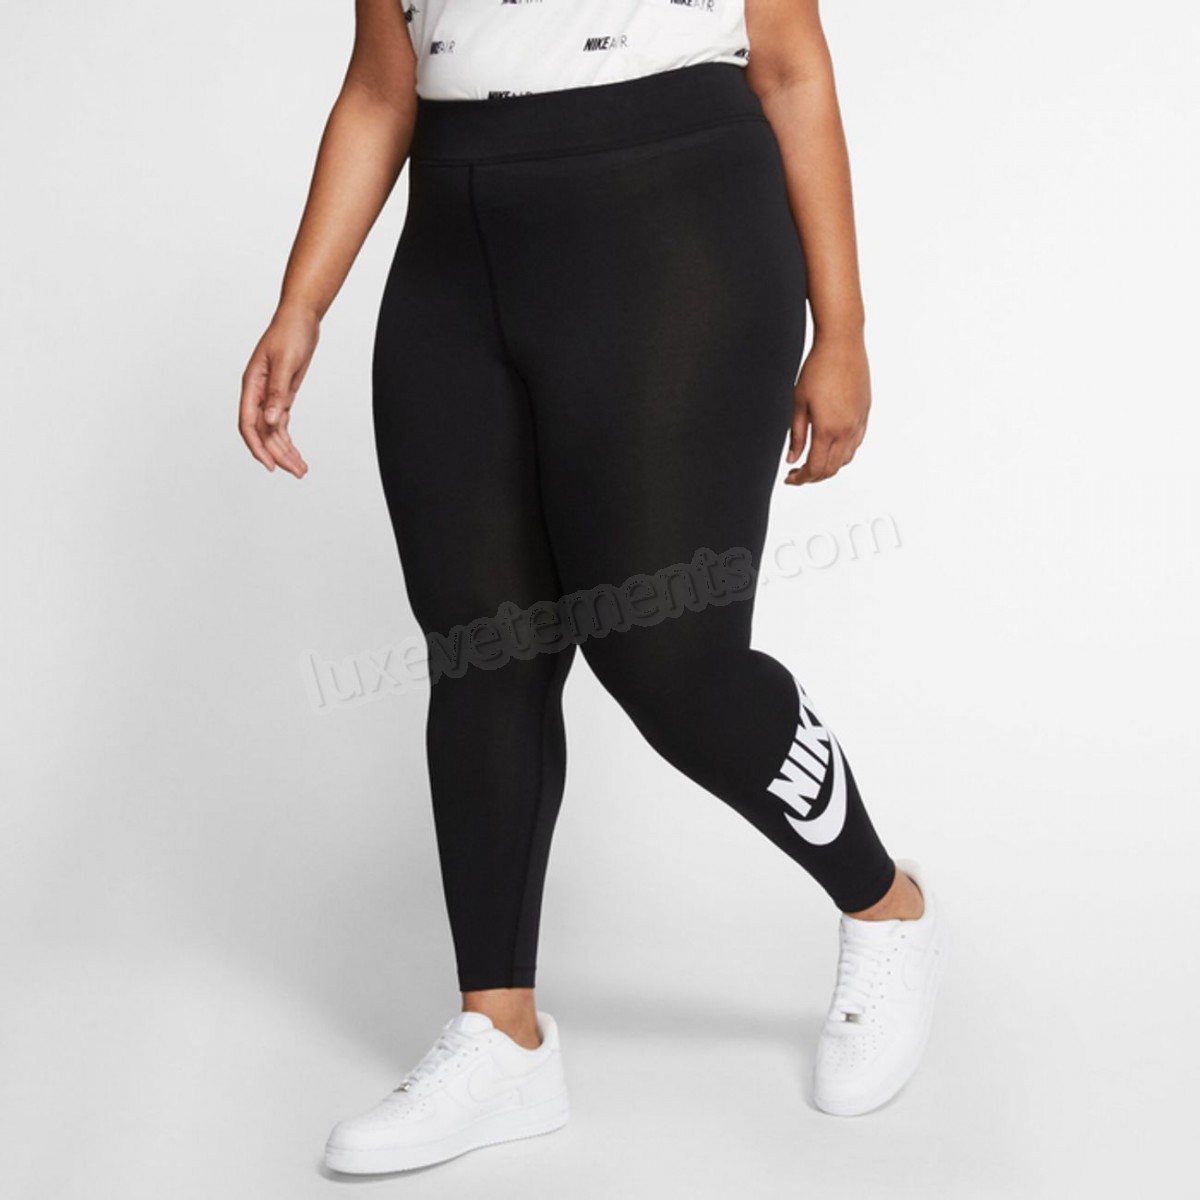 Nike-LEGGING femme NIKE Nike One (grande taille) Vente en ligne - -2